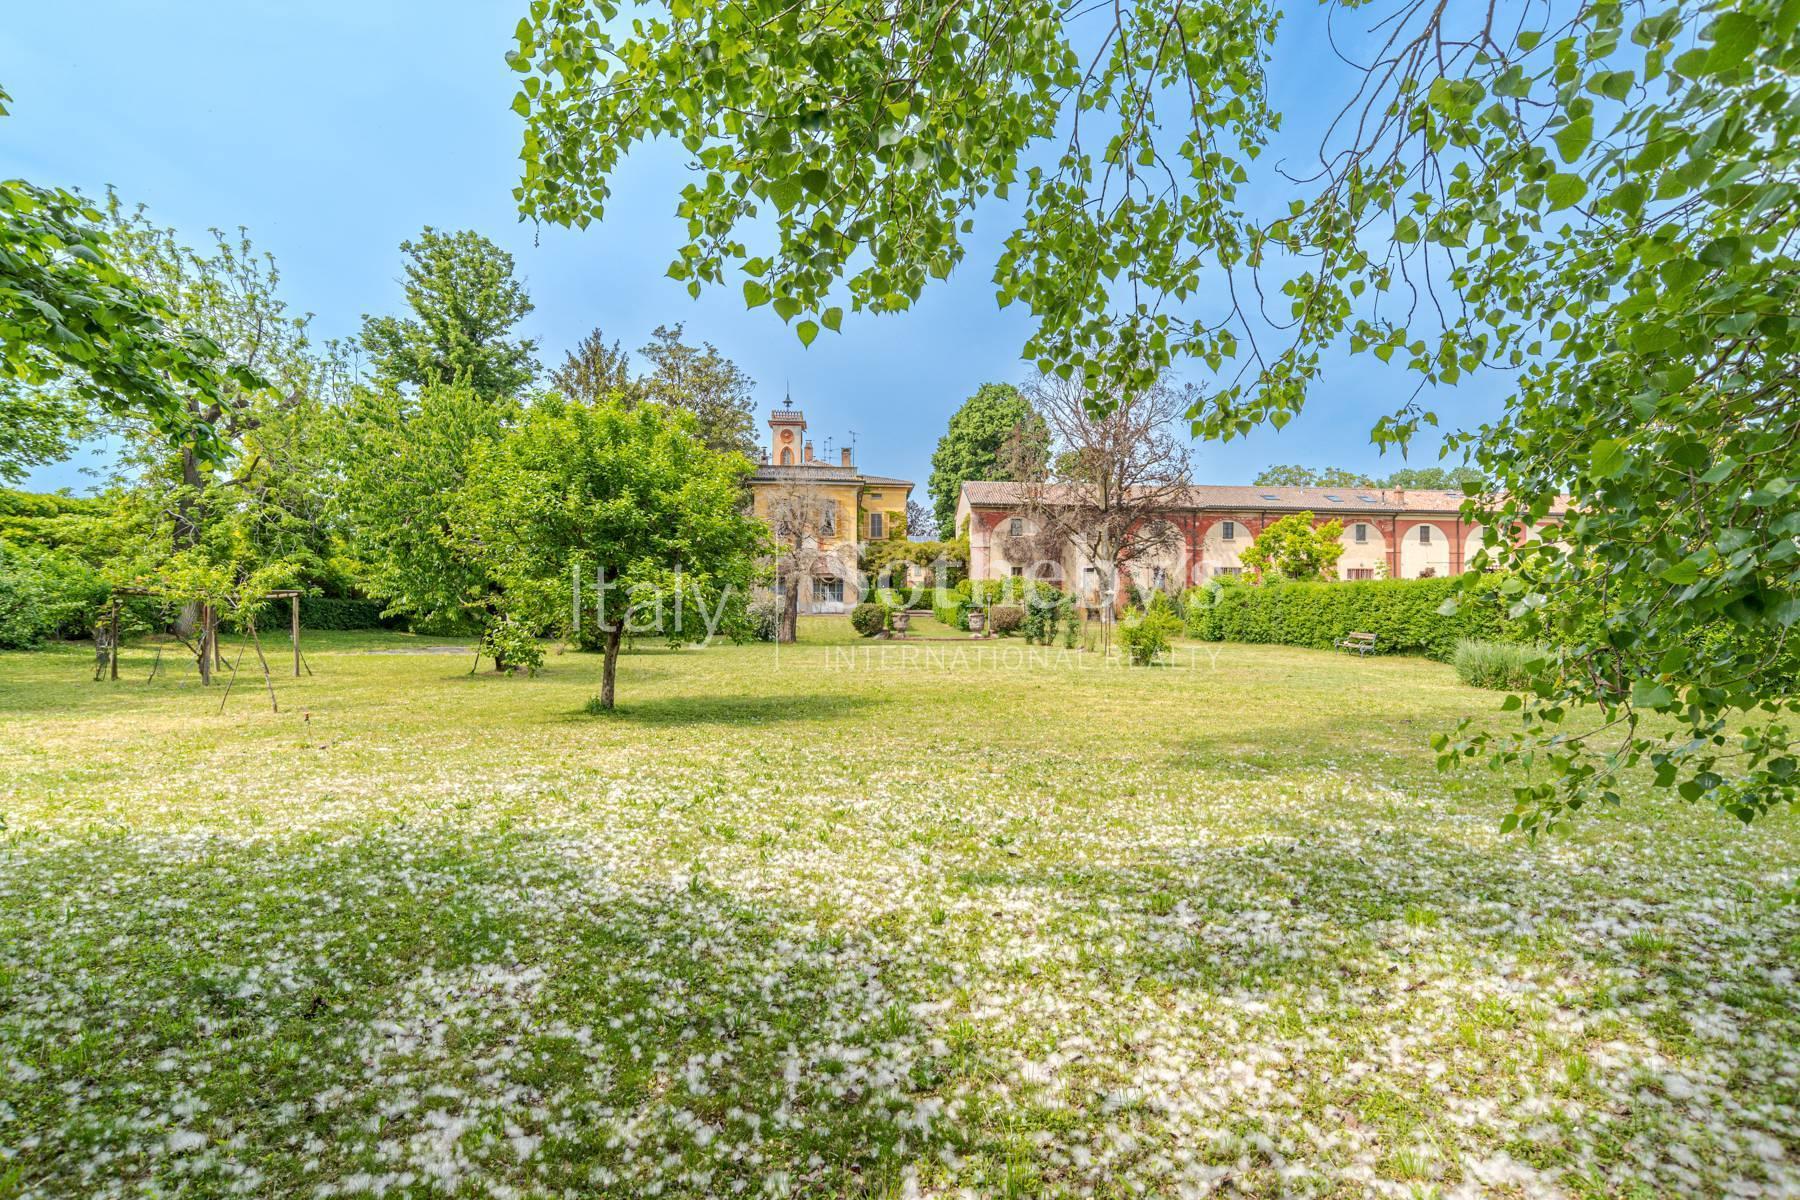 Cascina Bella - 18th century villa with park in Oltrepo' Pavese - 13